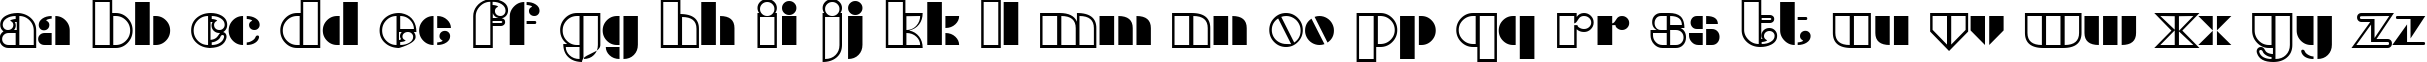 Пример написания английского алфавита шрифтом Densmore